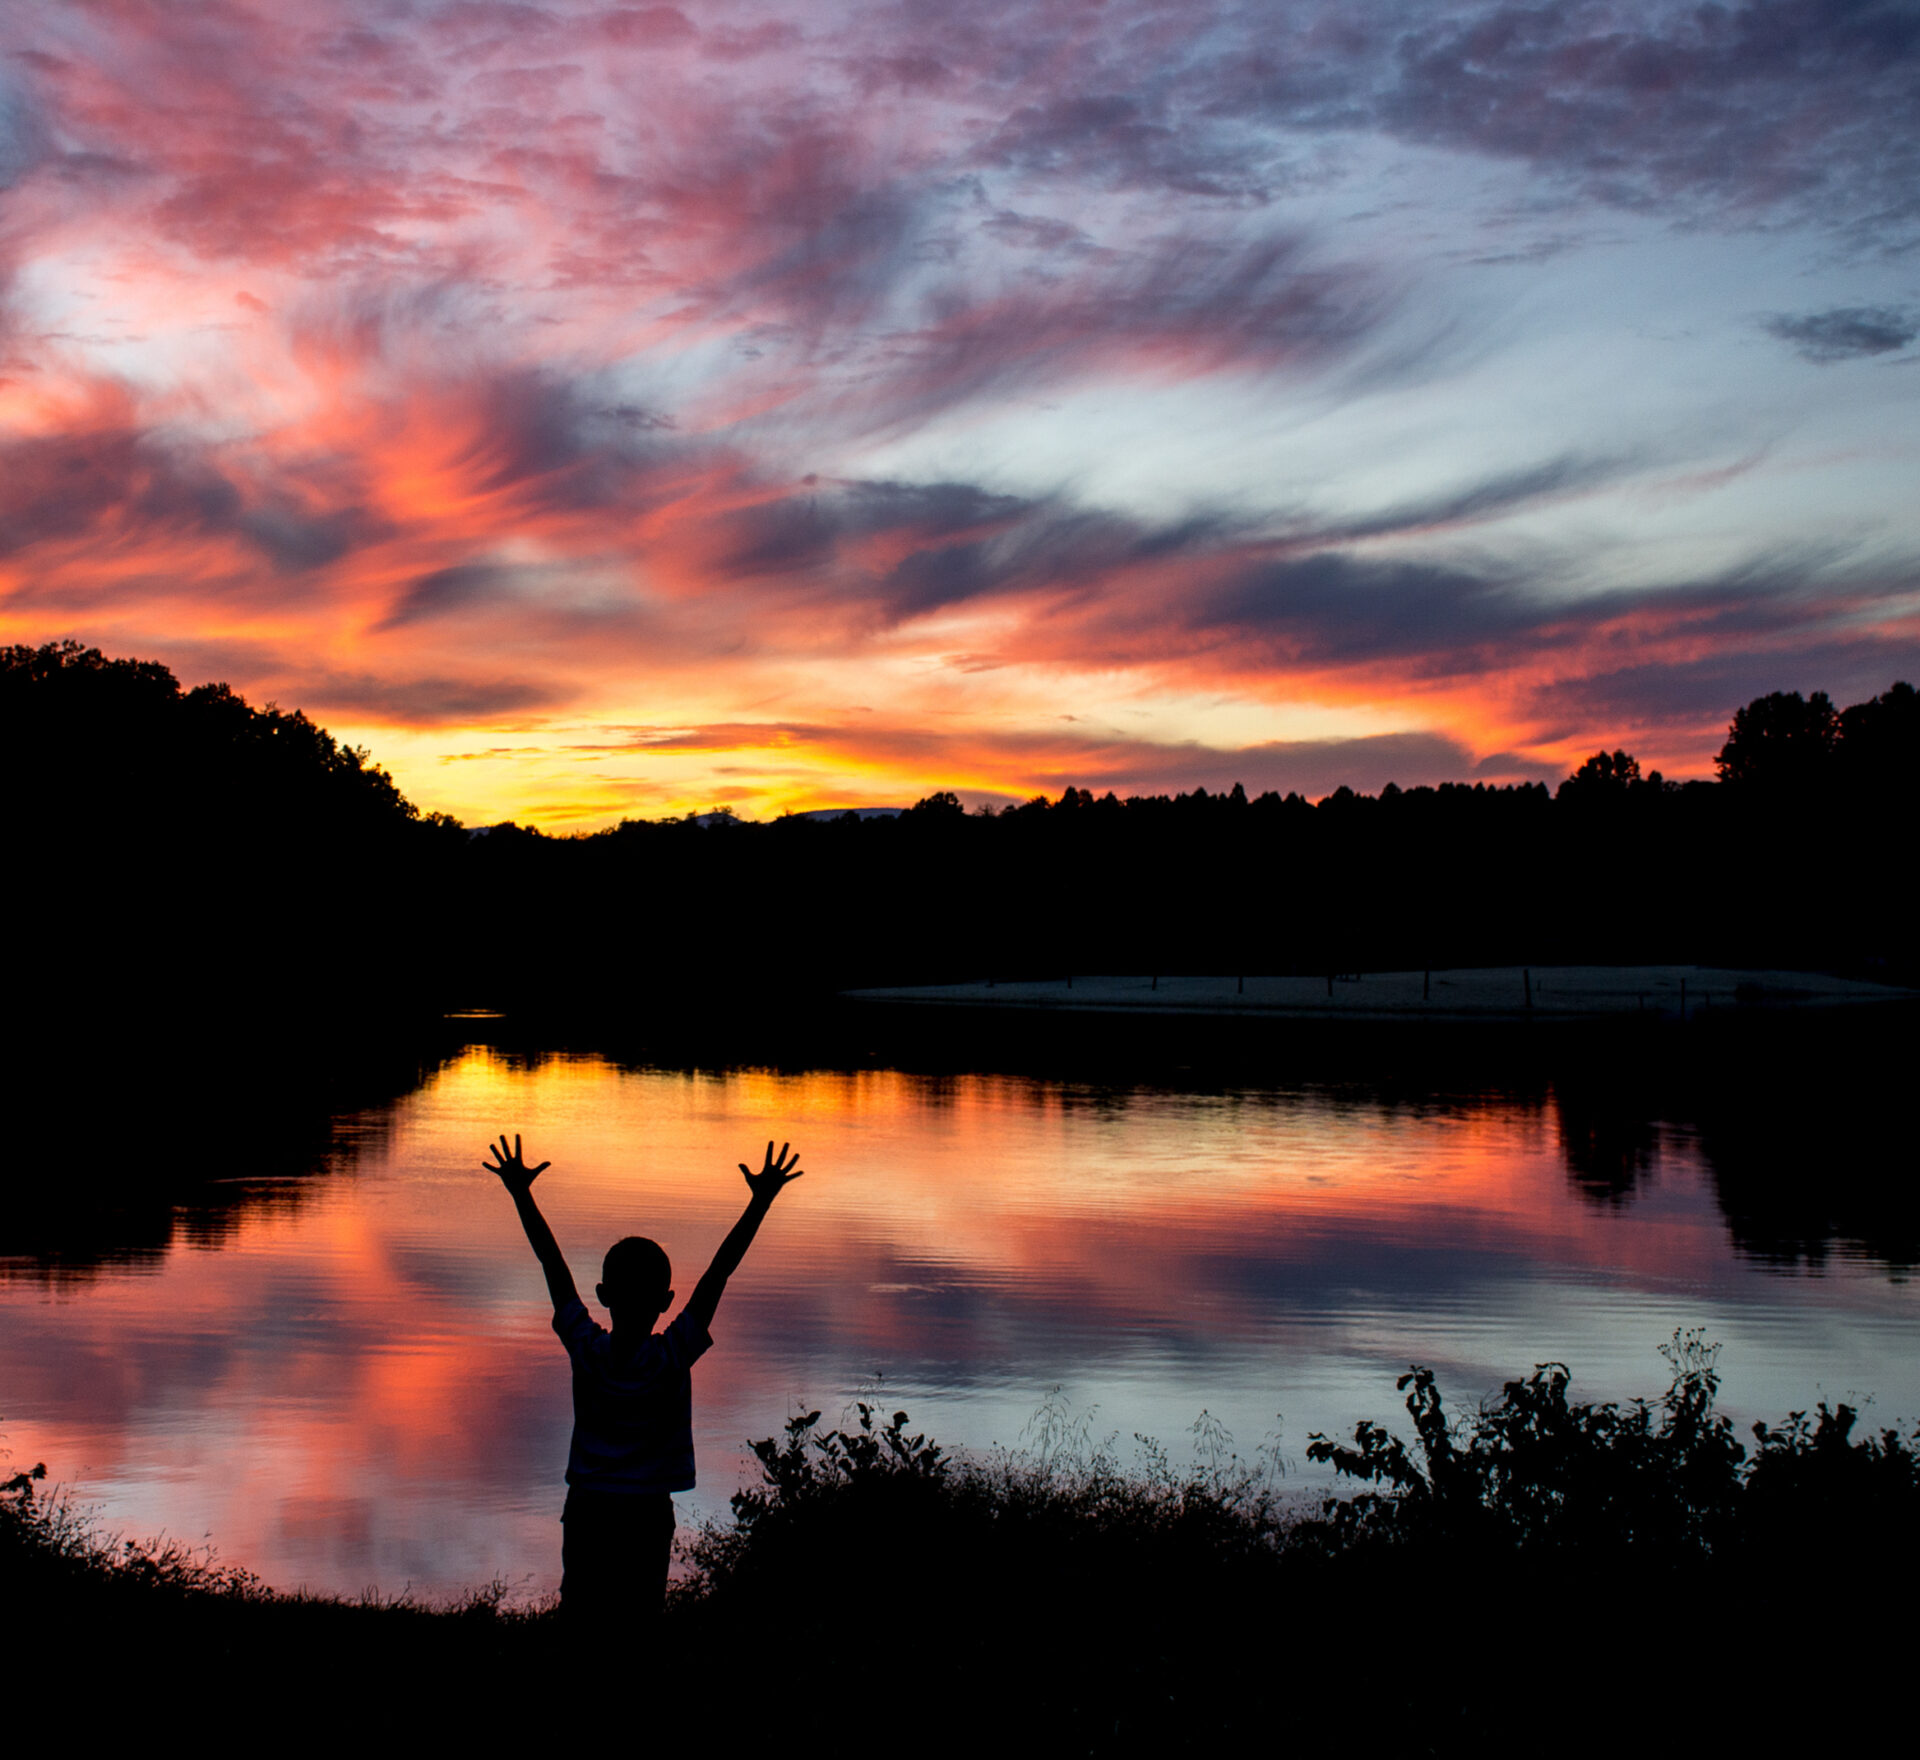 A boy enjoying a beautiful sunset at a lake.